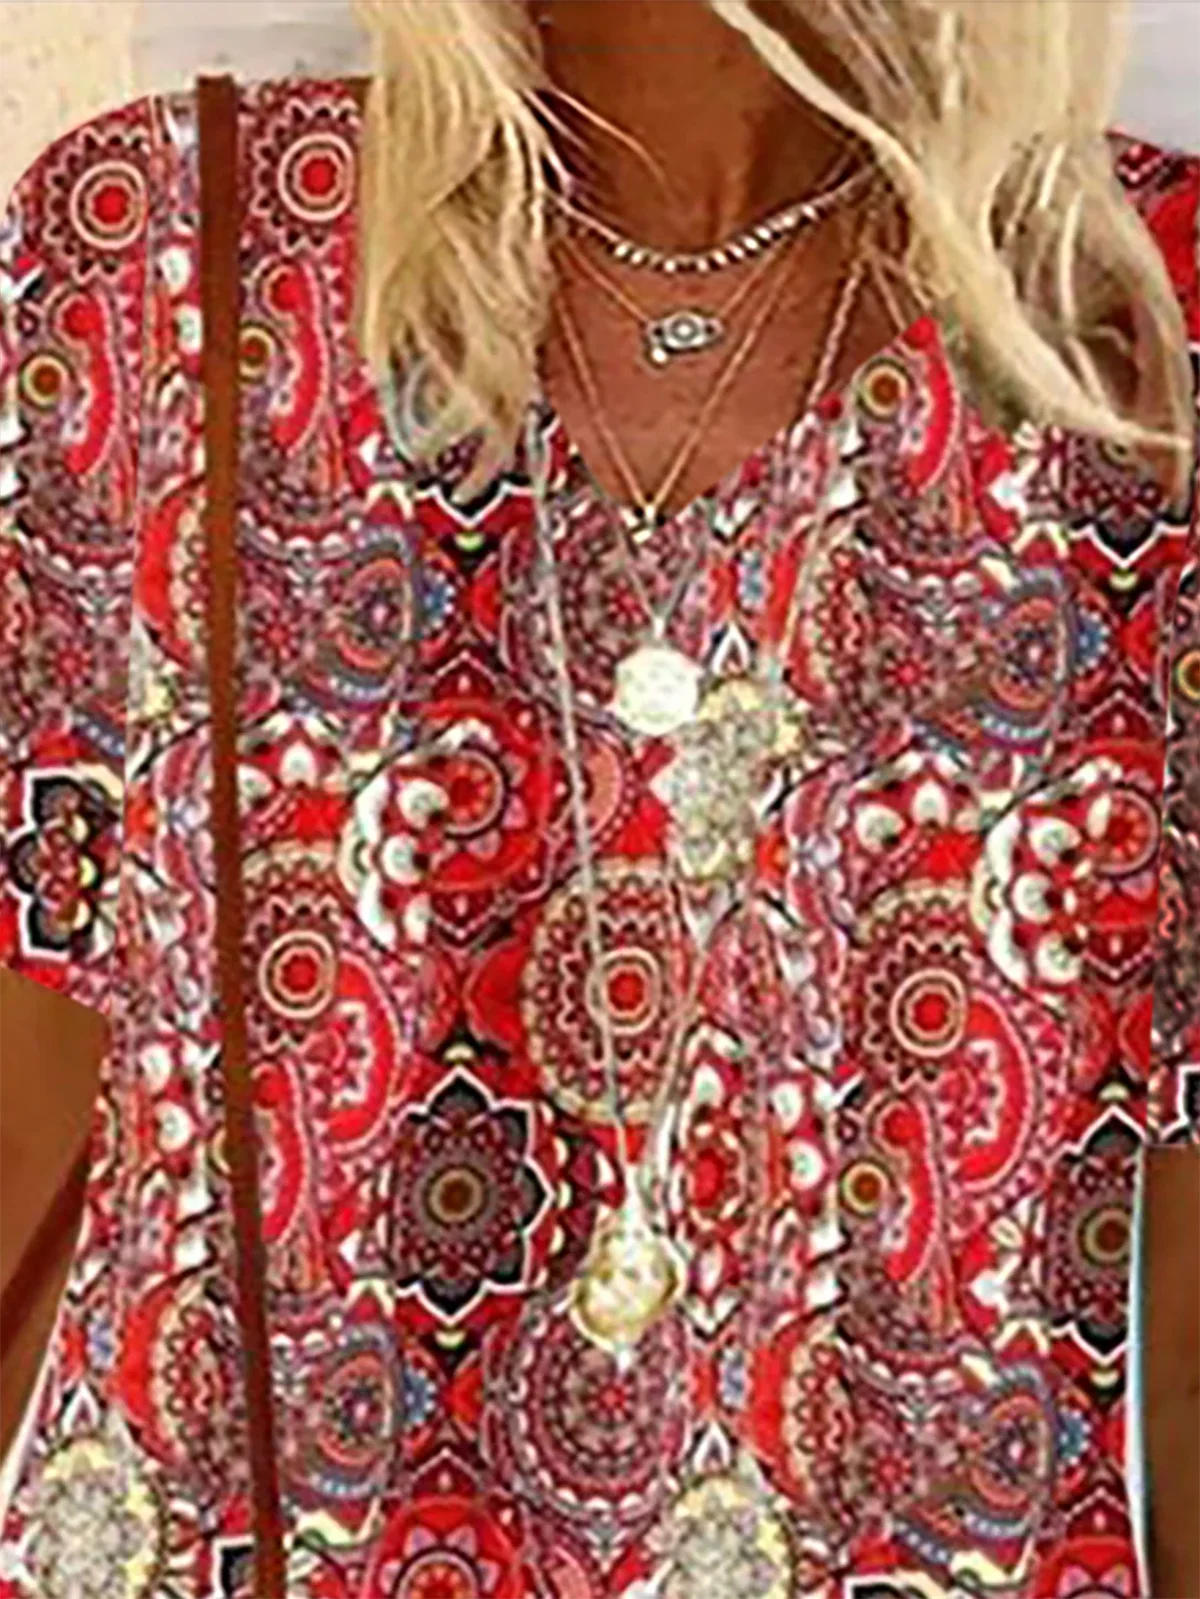 Damen-Bluse mit kurzen Ärmeln Sommer ethnischer Stil Rundhalsausschnitt Urlaub Ausgehen lässiges Oberteil Rot